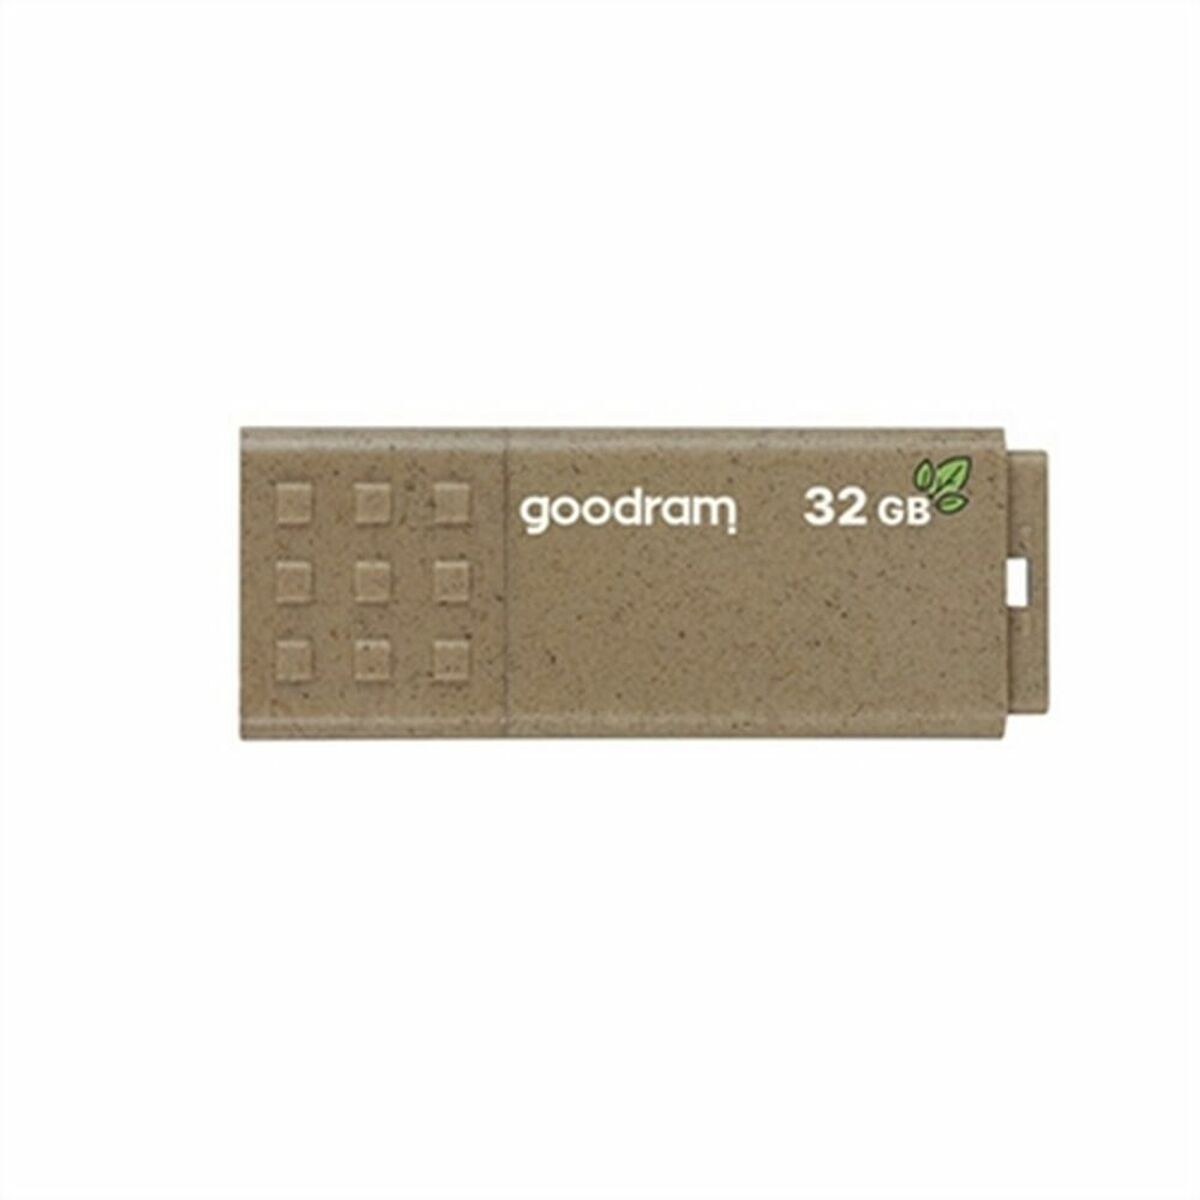 GoodRam UME3 Umweltfreundlicher USB-Stick 32 GB